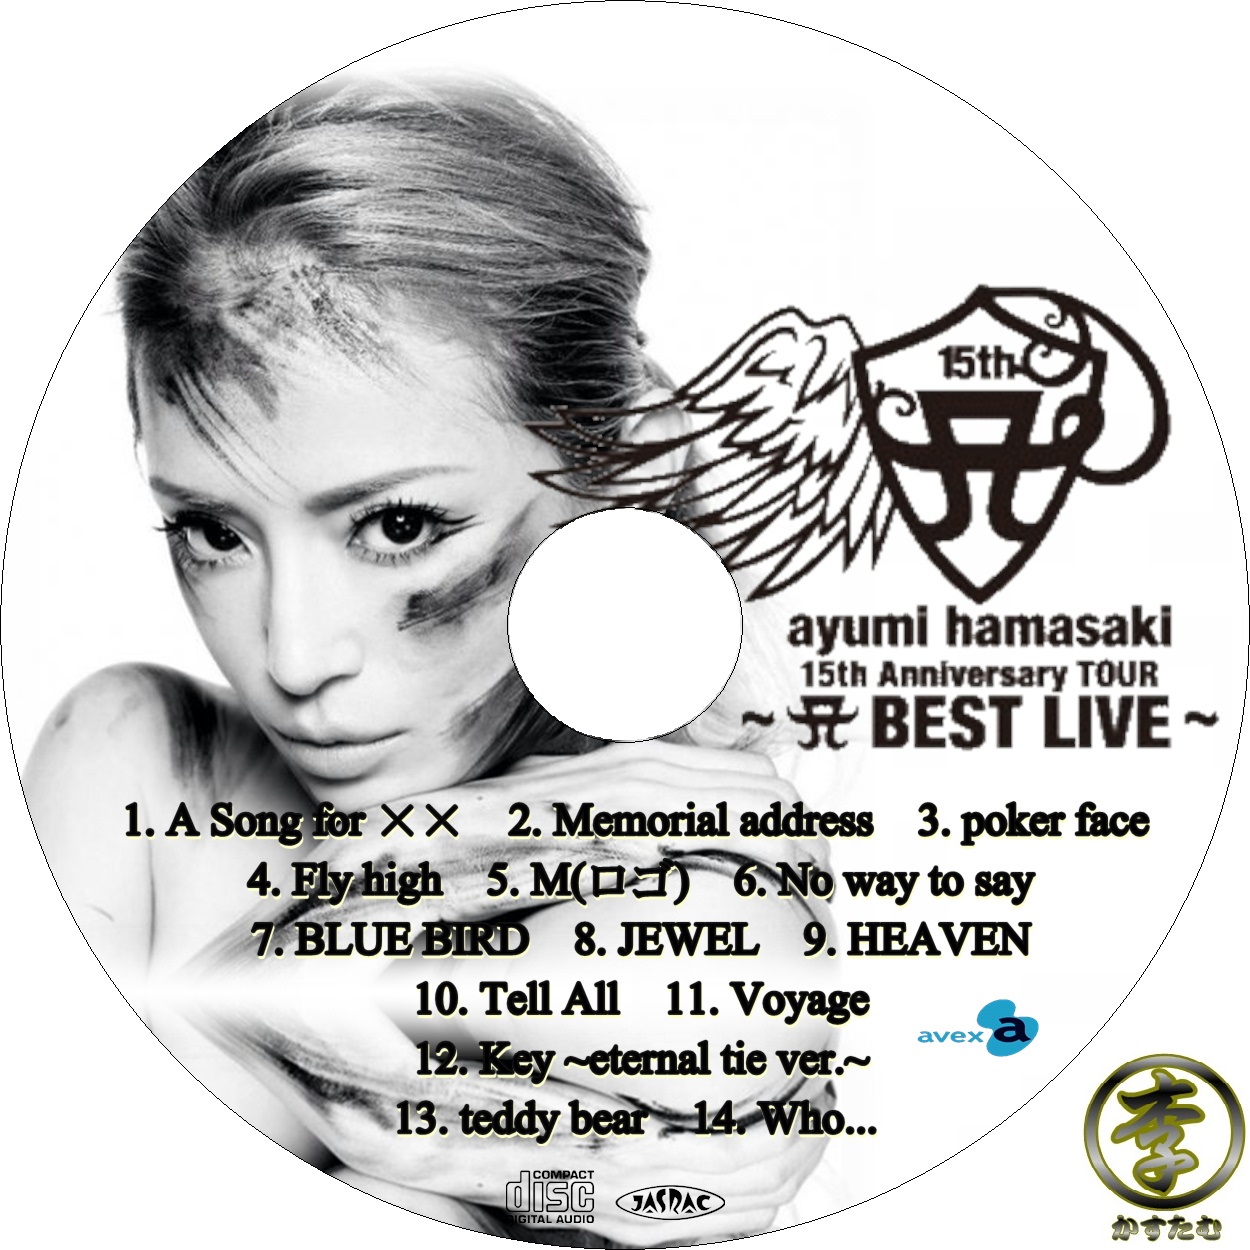 Ayumi hamasaki 15th Anniversary TOUR 〜A BEST LIVE〜 - Ayumi Hamasaki